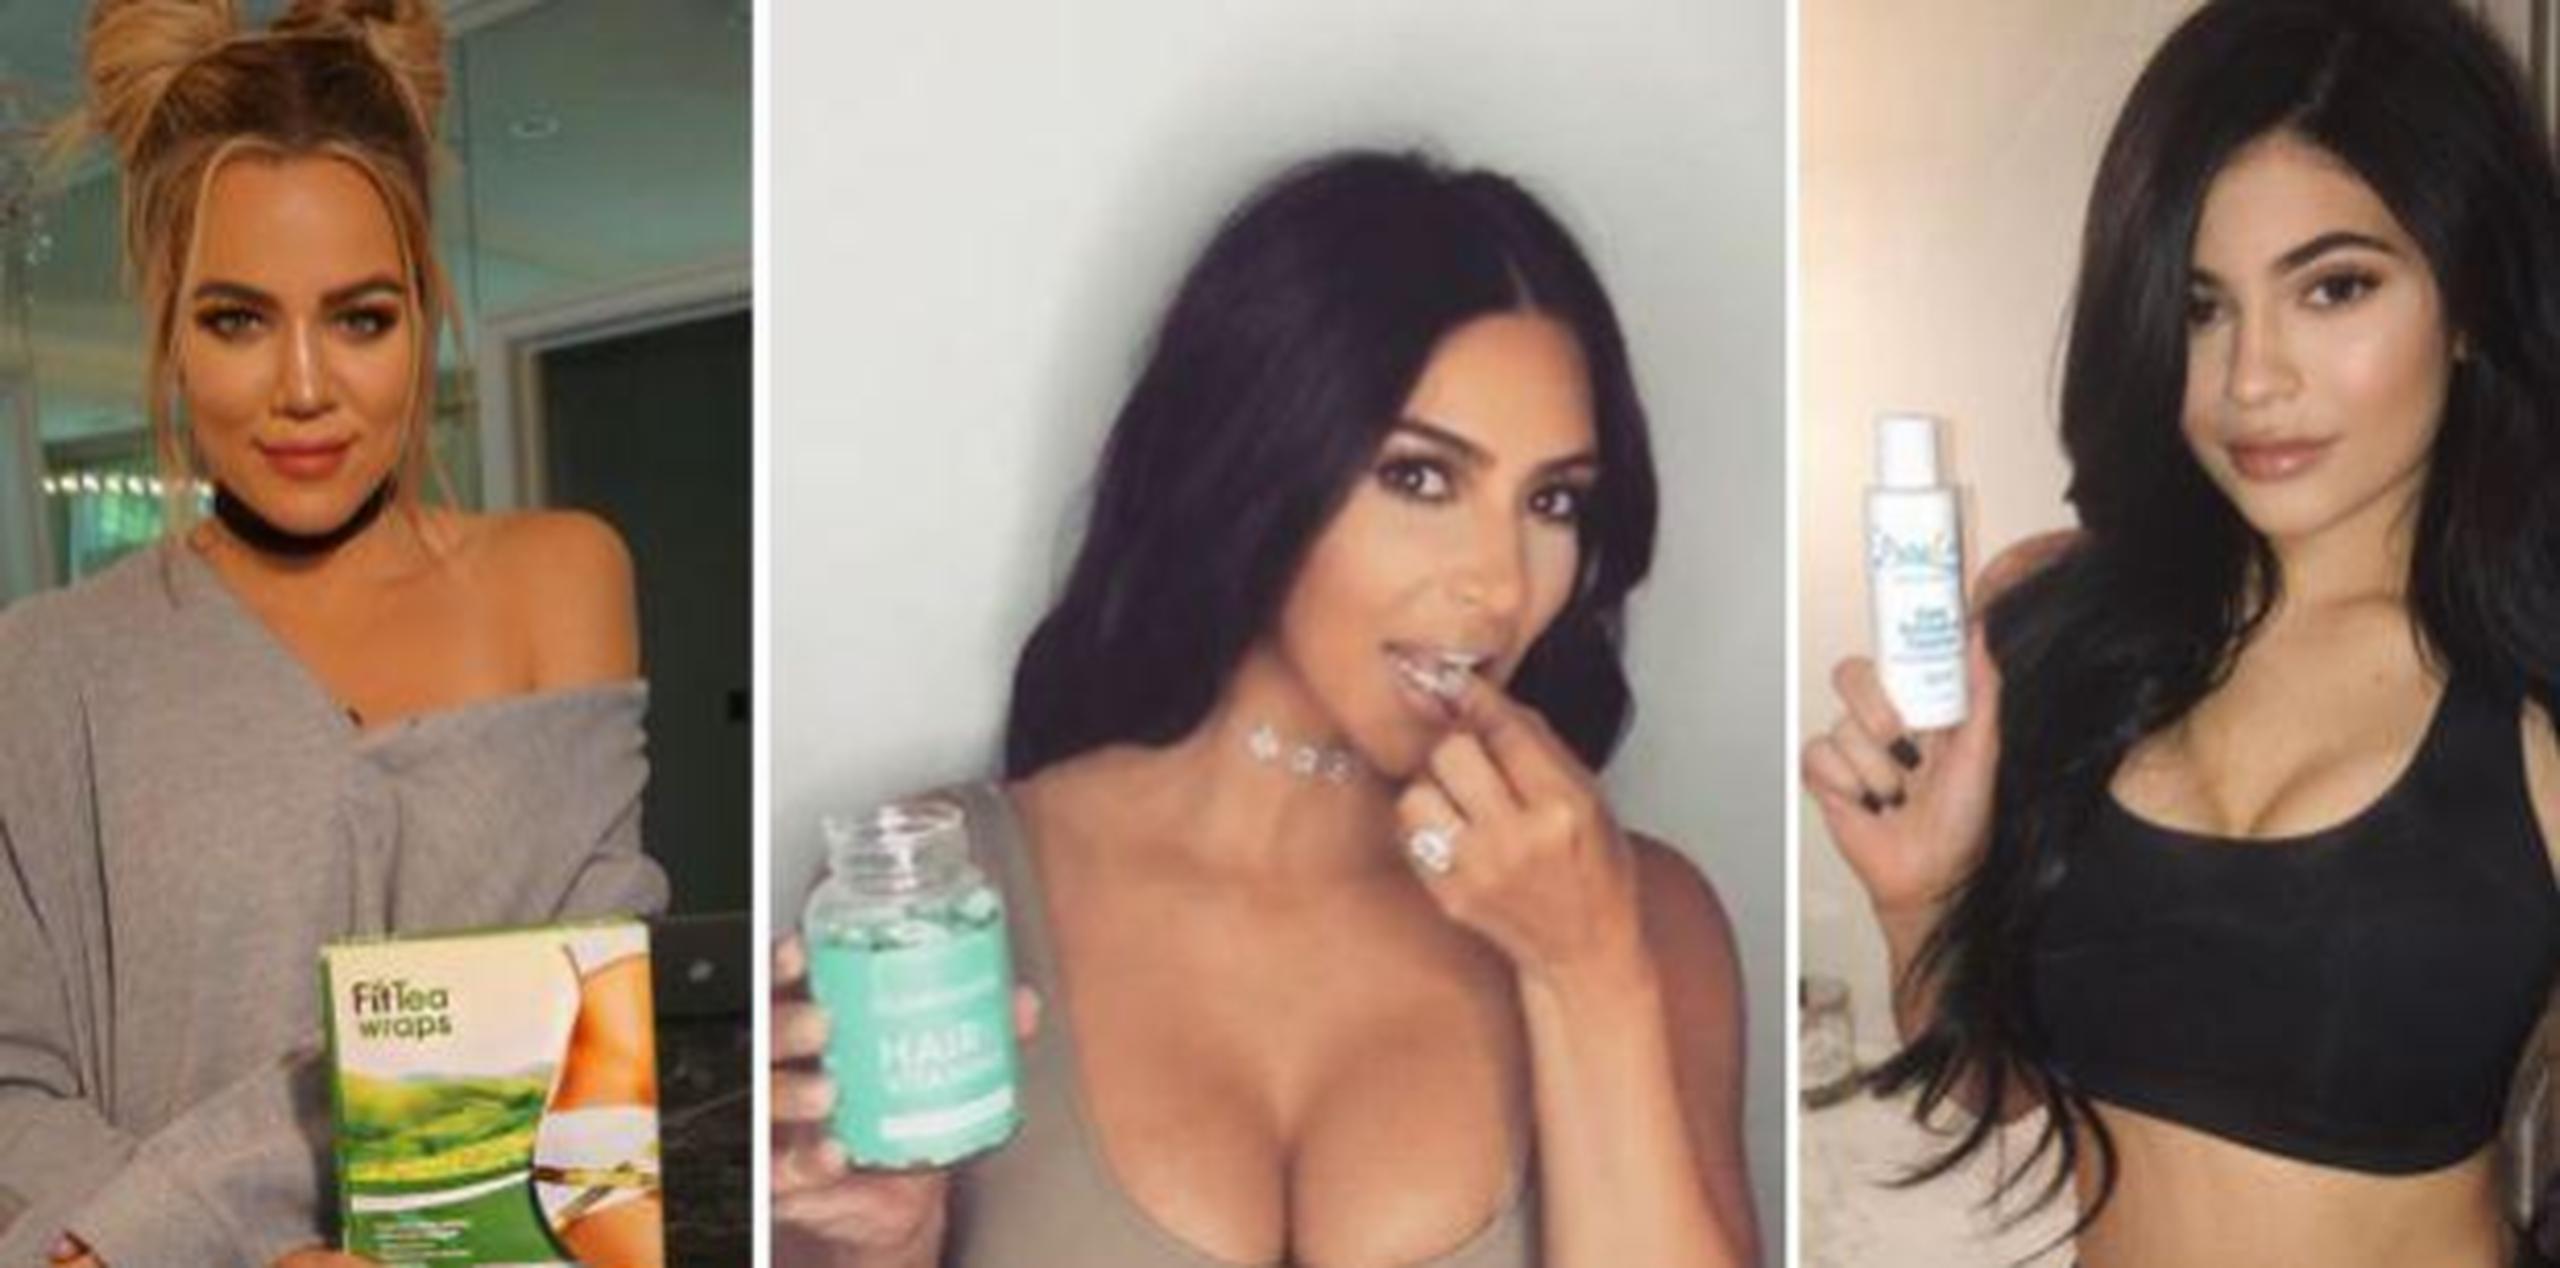 Fotos de Khloé Kardashian, Kim Kardashian y Kylie Jenner promocionando productos en Instagram. (Instagram)